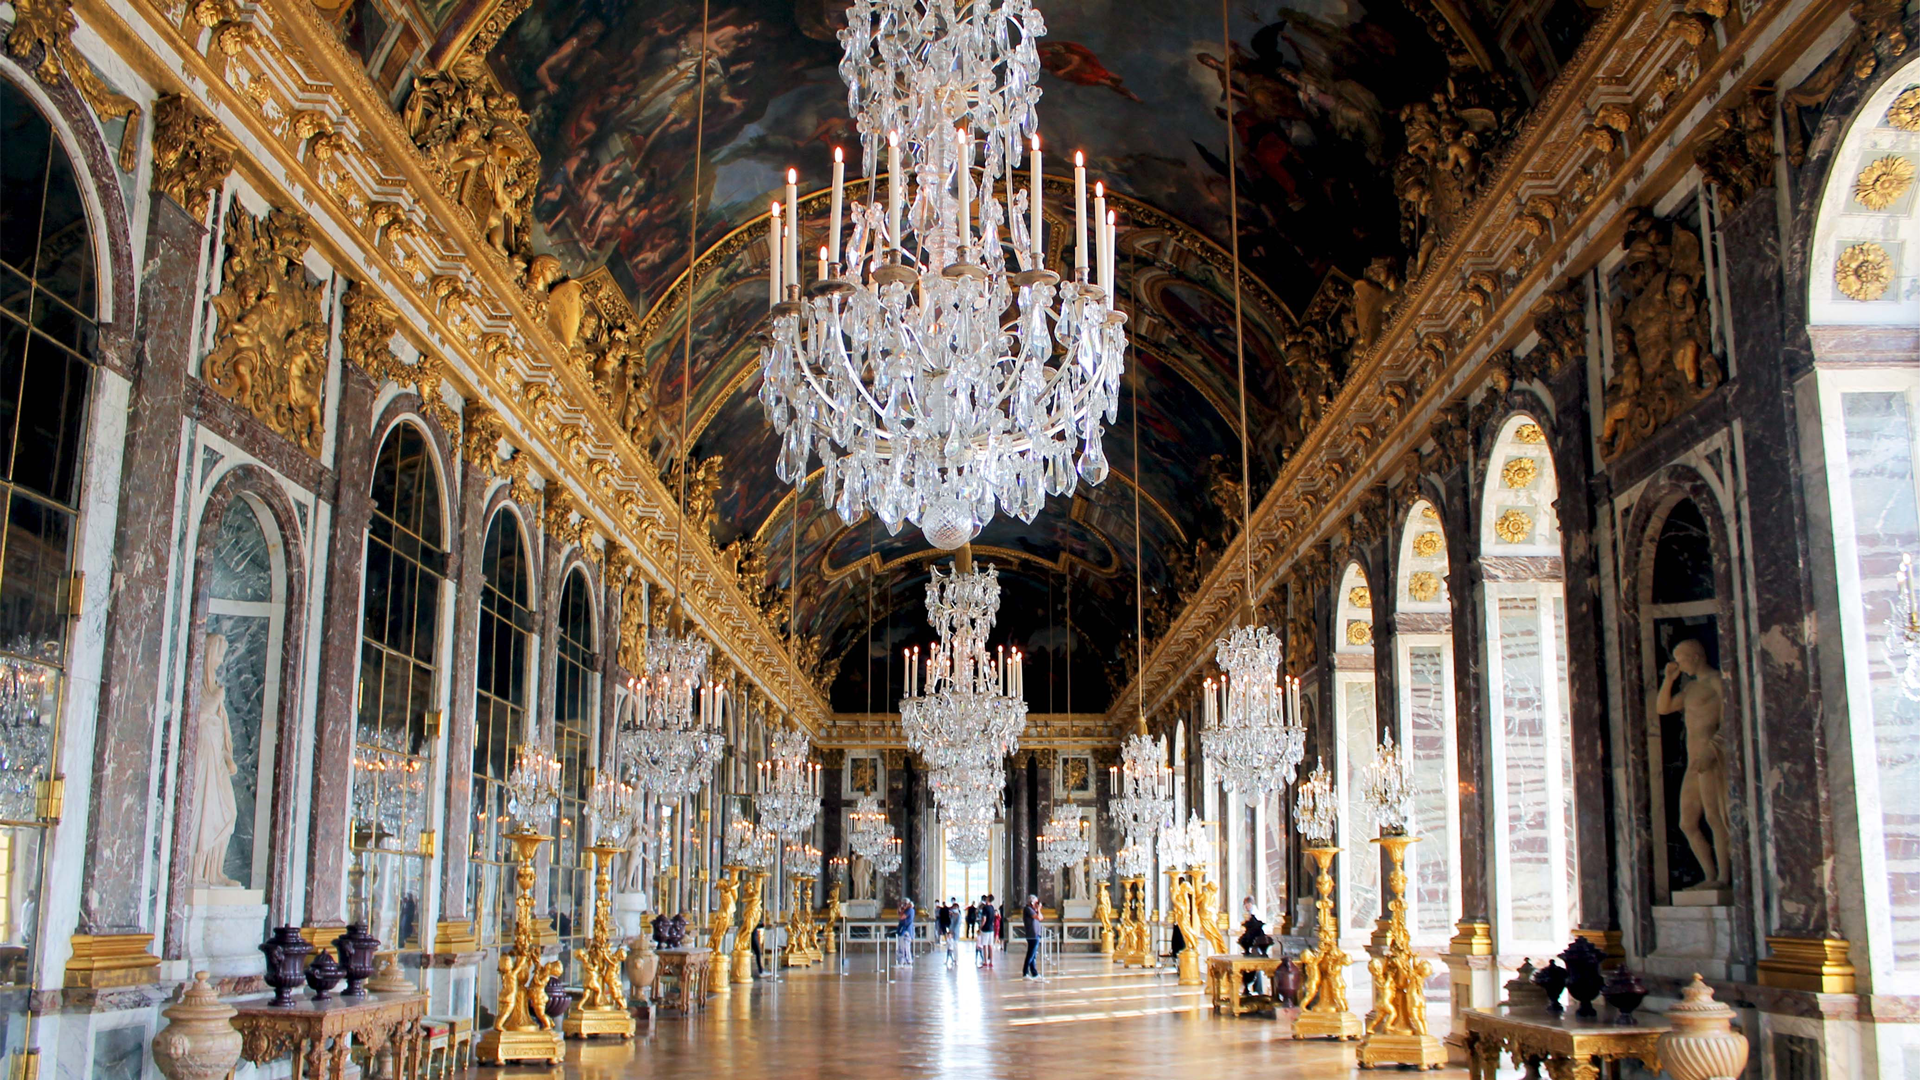 Versailles: Château de Versailles - Galeries de L'Histoire…